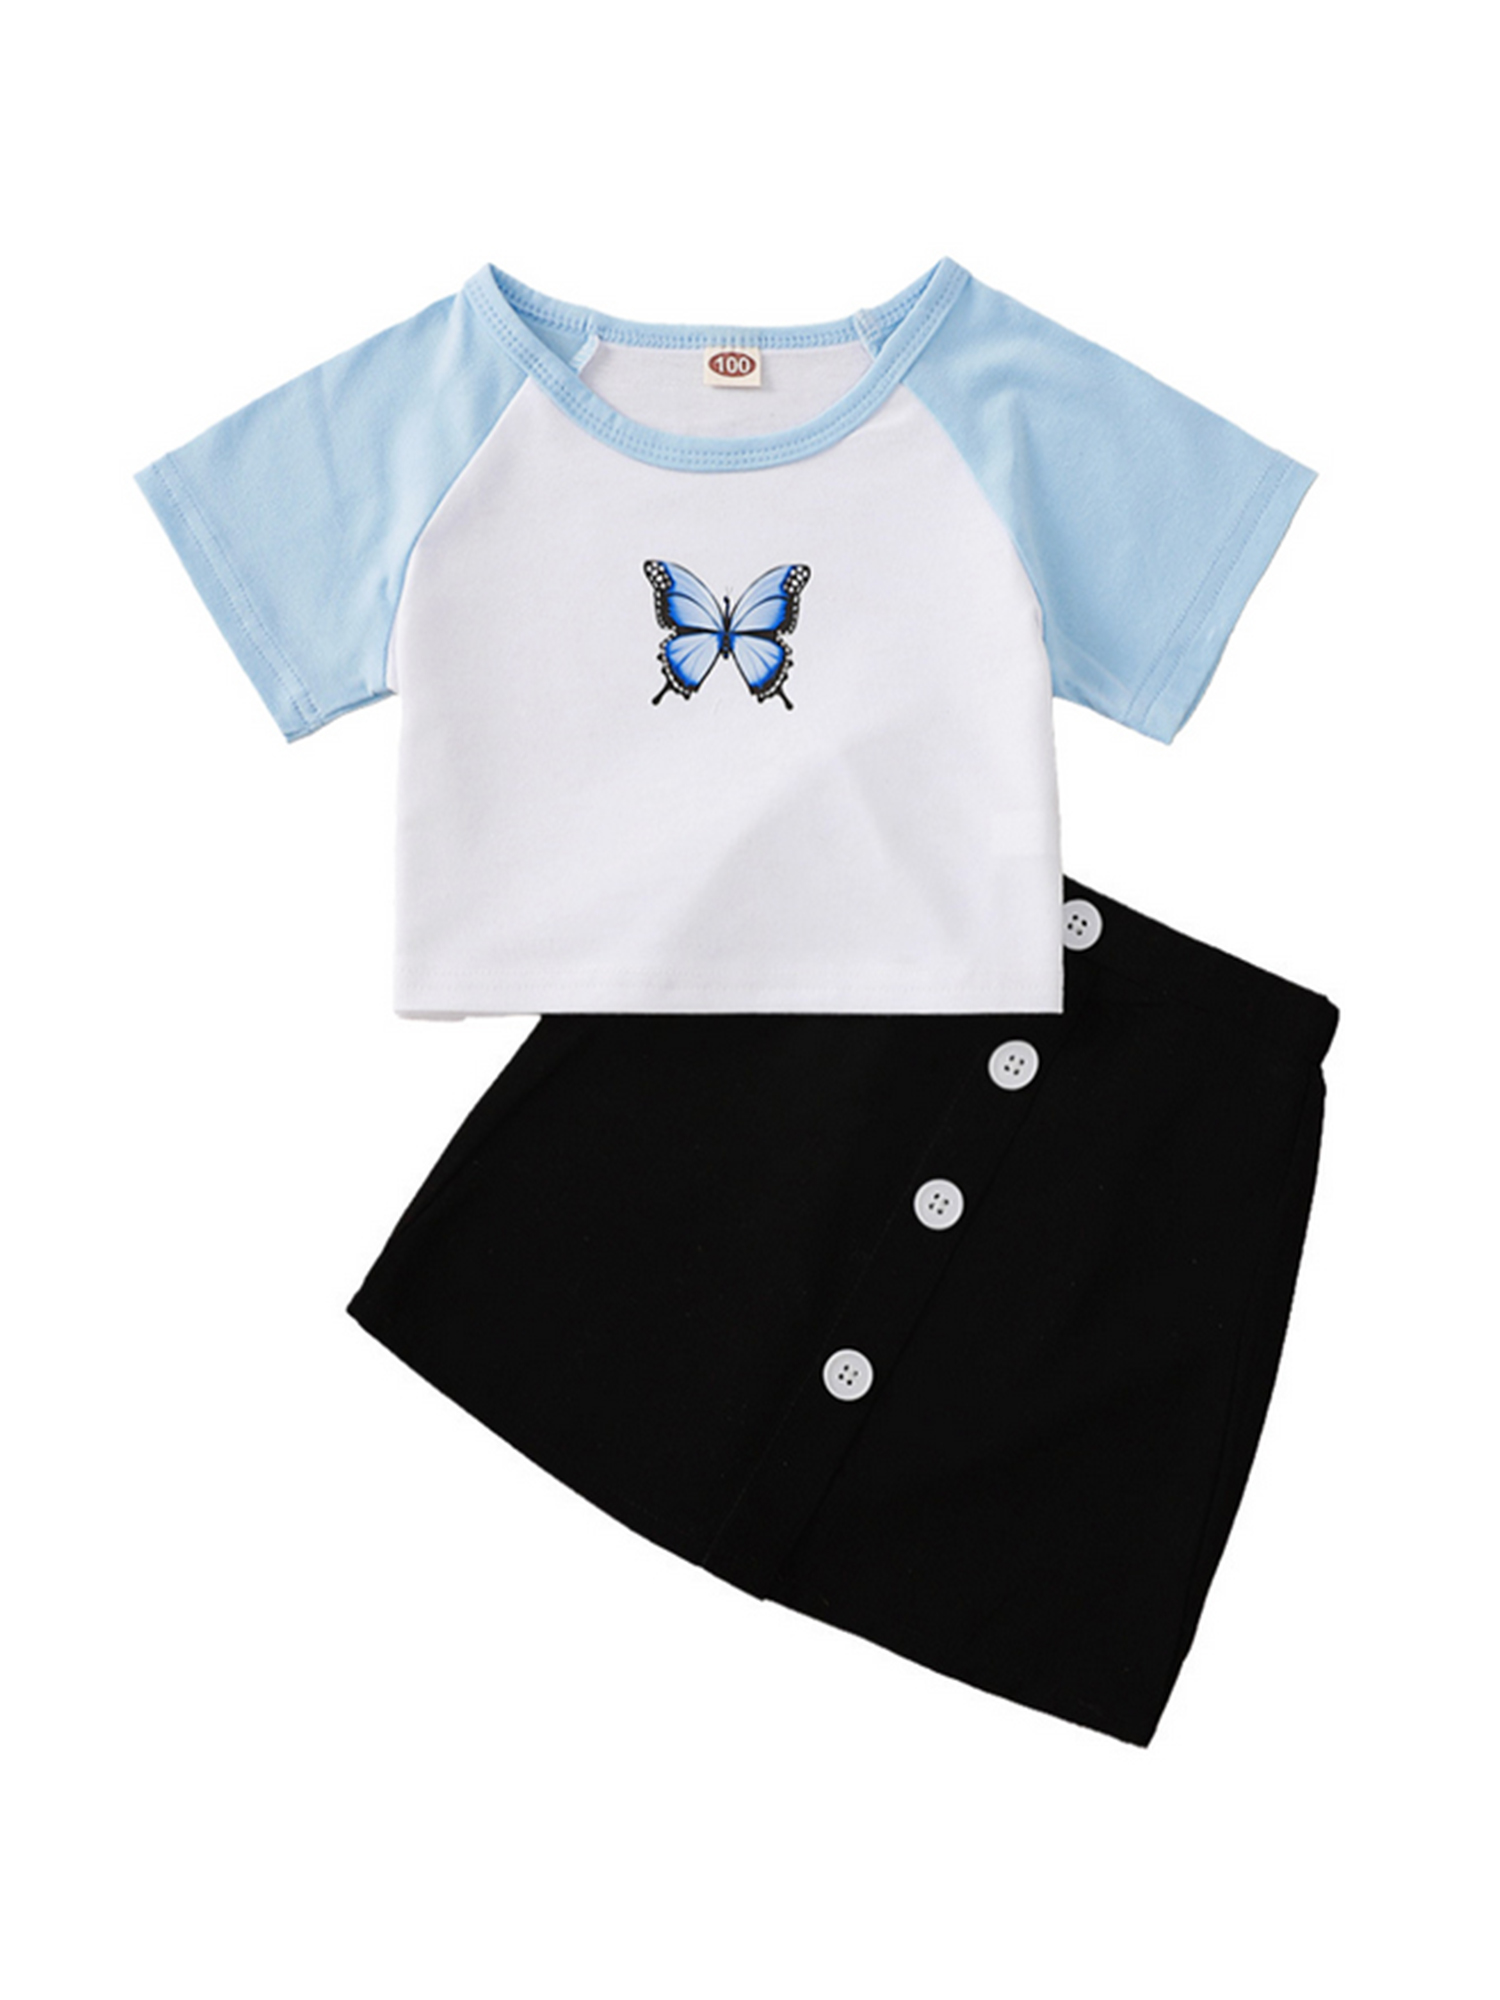 hirigin Kids Girls 2-piece Outfit Set Butterfly Print T-shirt+Skirt Set - image 2 of 9